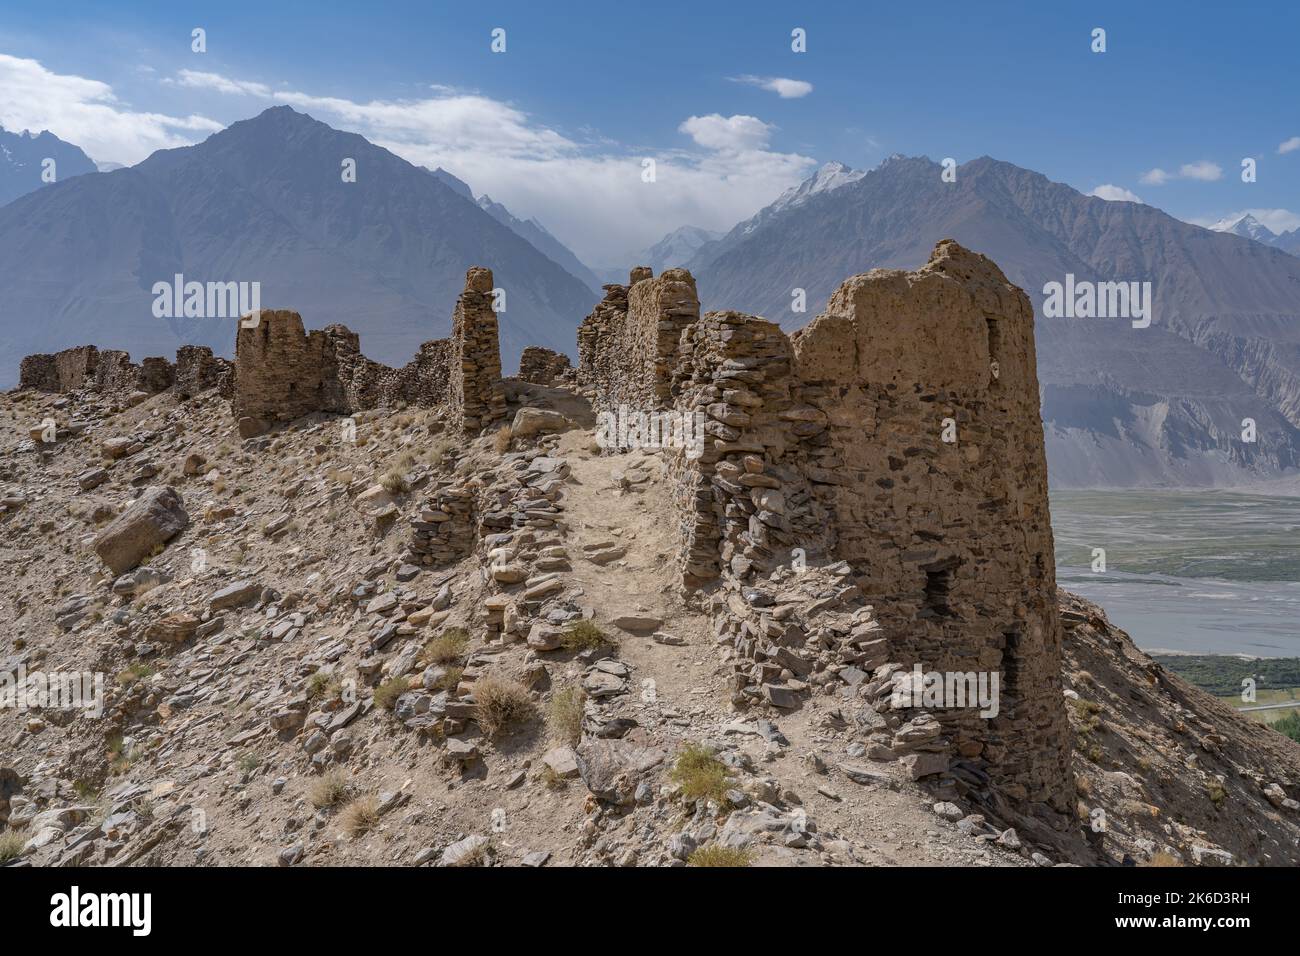 Vista panoramica dell'antica fortezza di Yamchun sulla strada della seta nel corridoio di Wakhan con le montagne dell'Afghanistan sullo sfondo, Gorno-Badakshan, Tagikistan Foto Stock